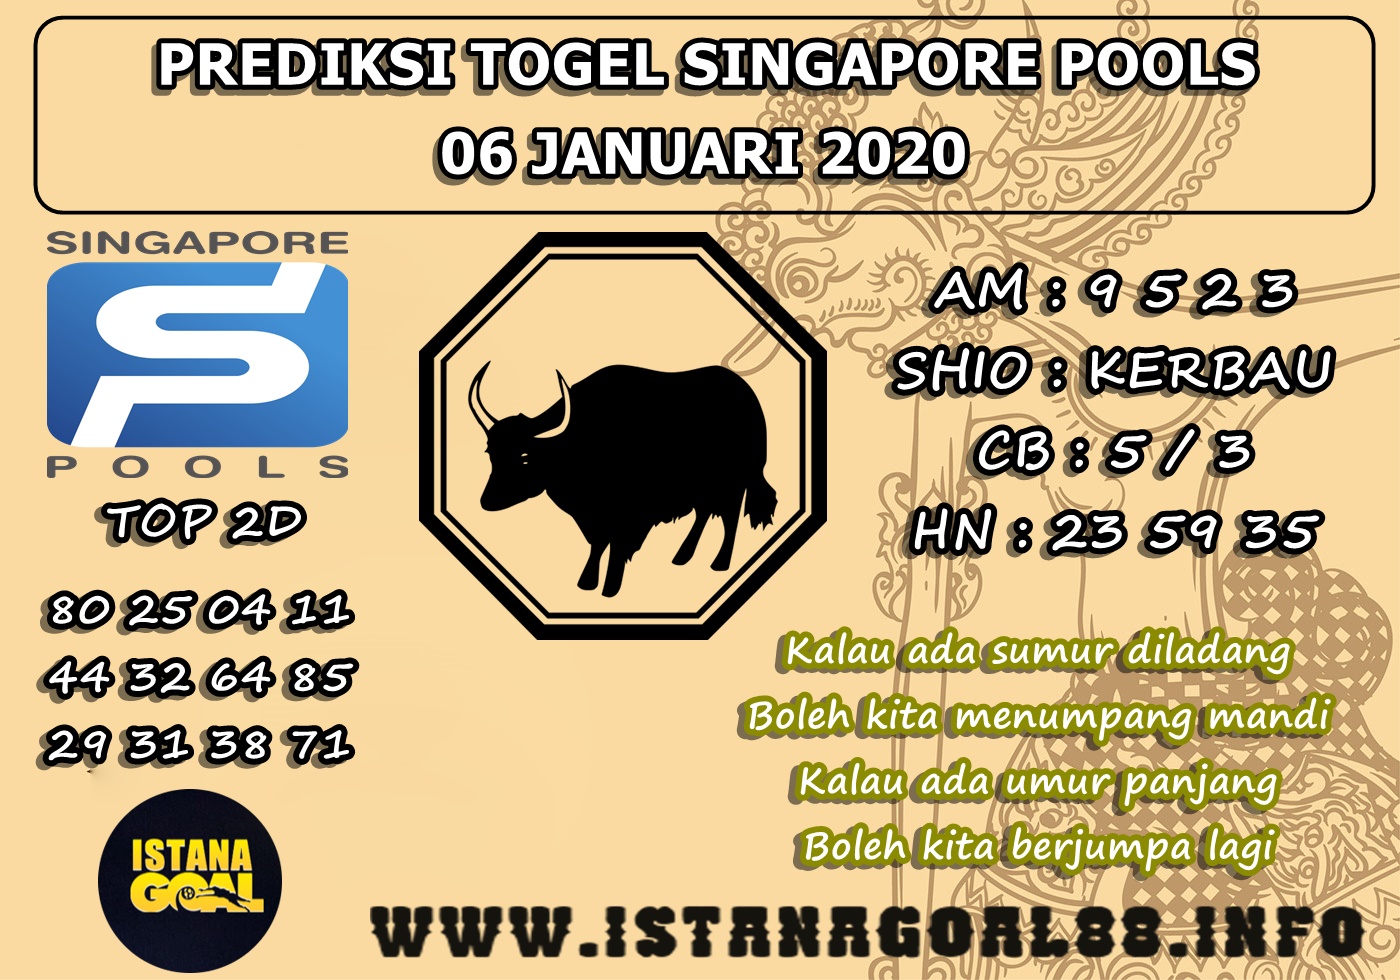 PREDIKSI TOGEL SINGAPORE POOLS 06 JANUARI 2020